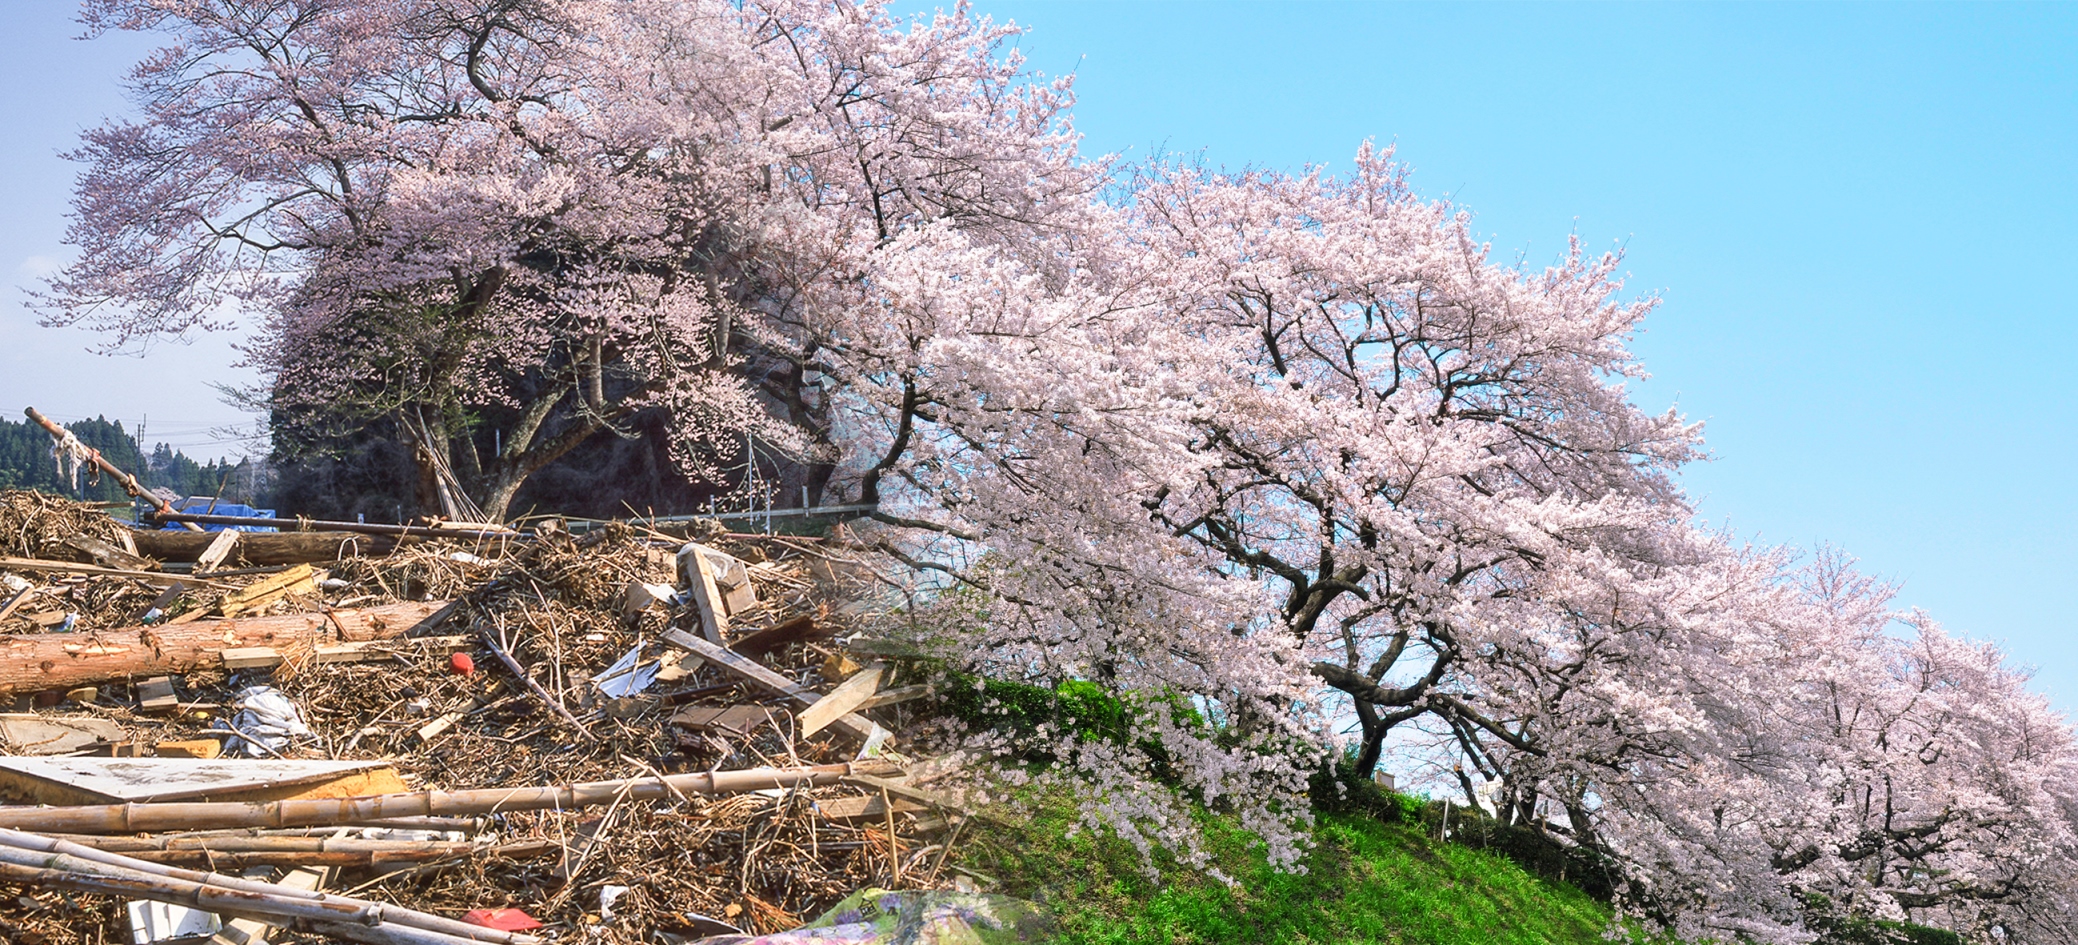 オーガビッツ さくら並木プロジェクト 福島県新地町で桜の植樹を行いました 地域と成長する ニュース 株式会社アダストリア